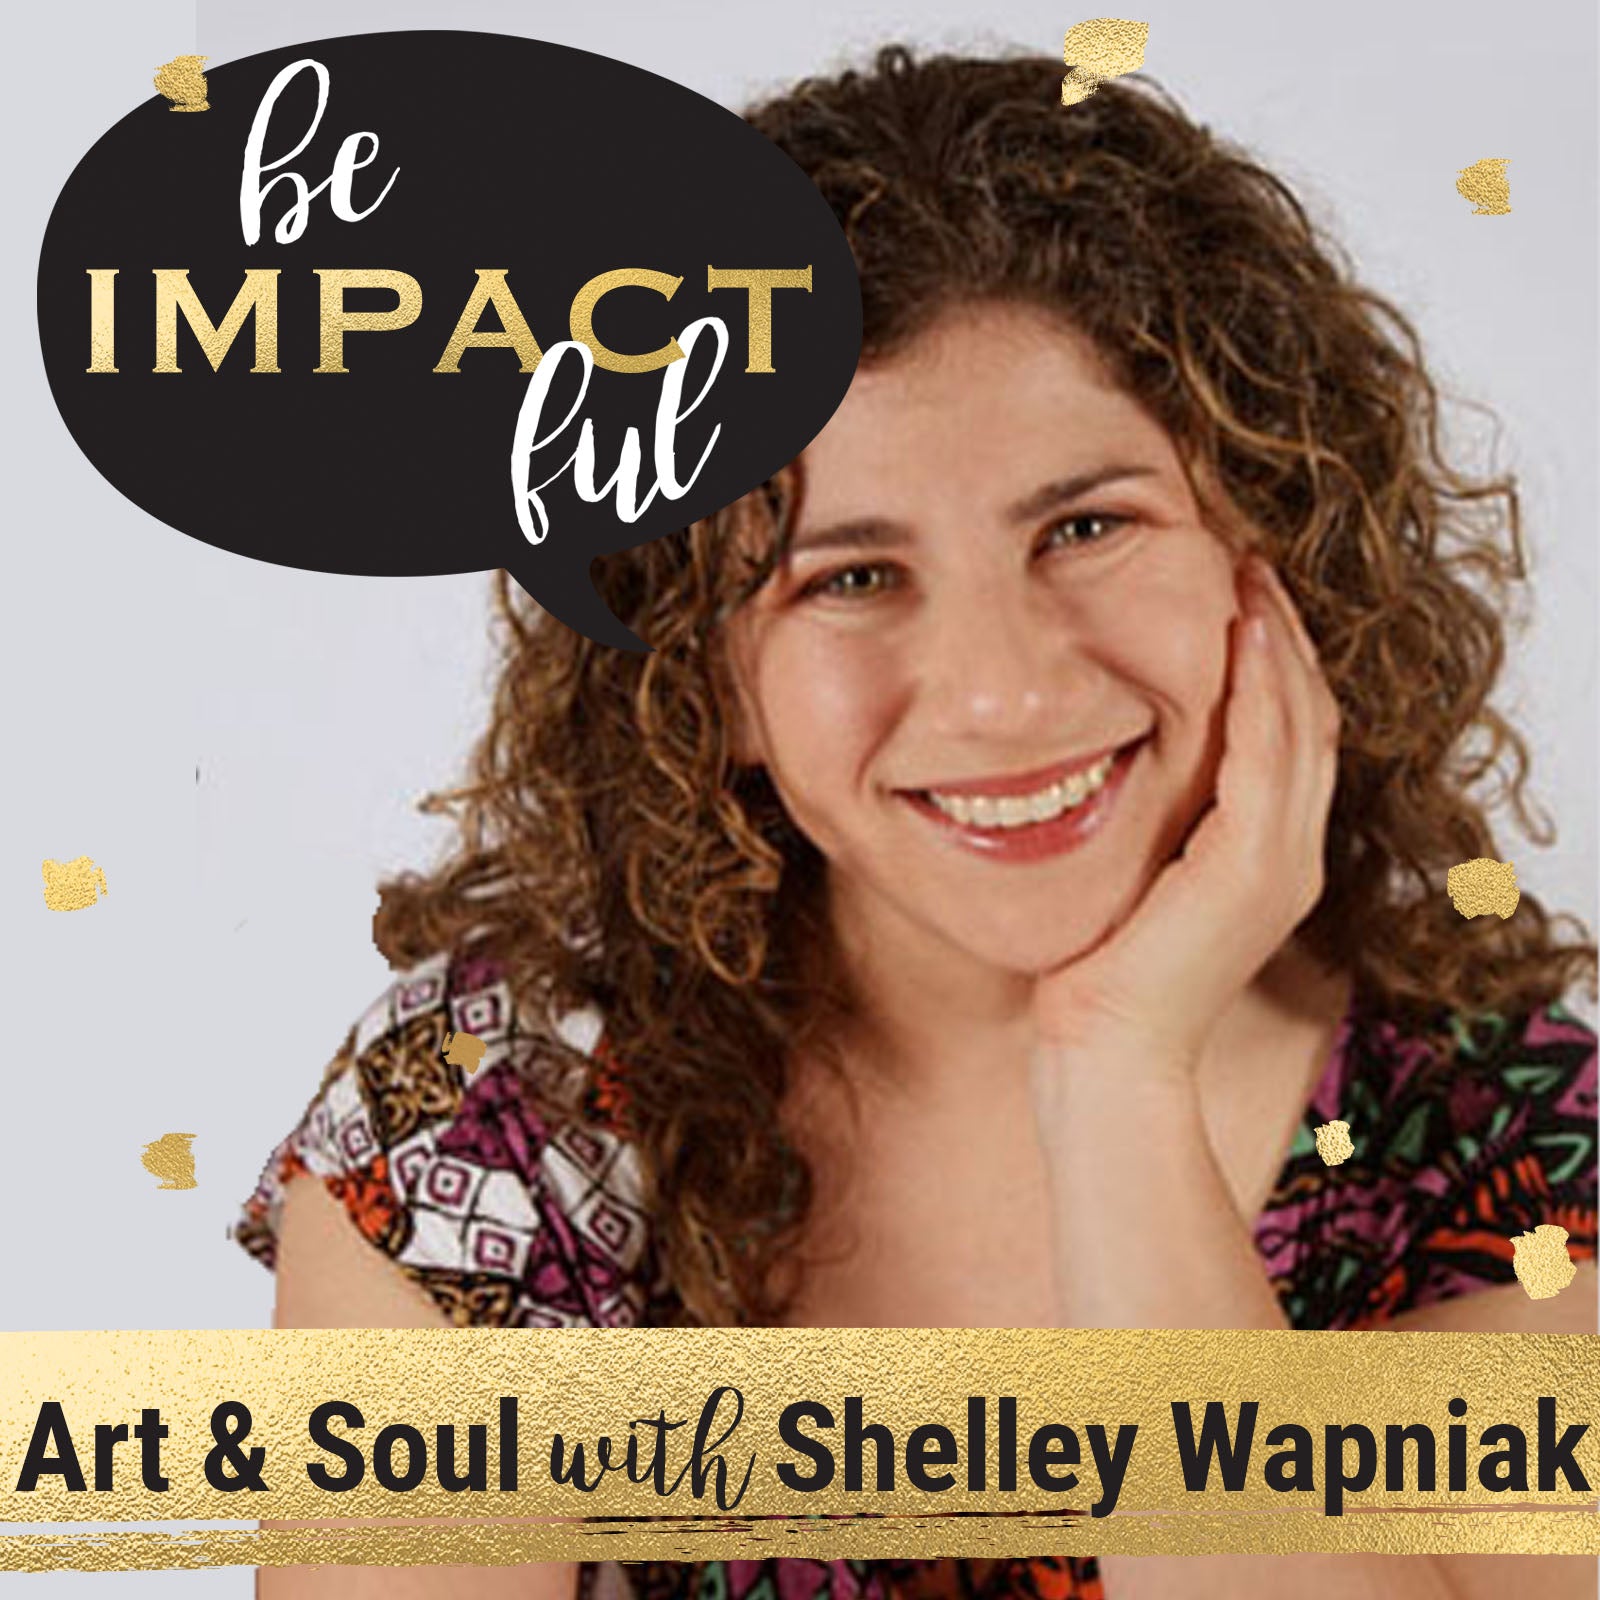 Art & Soul with Shelley Wapniak